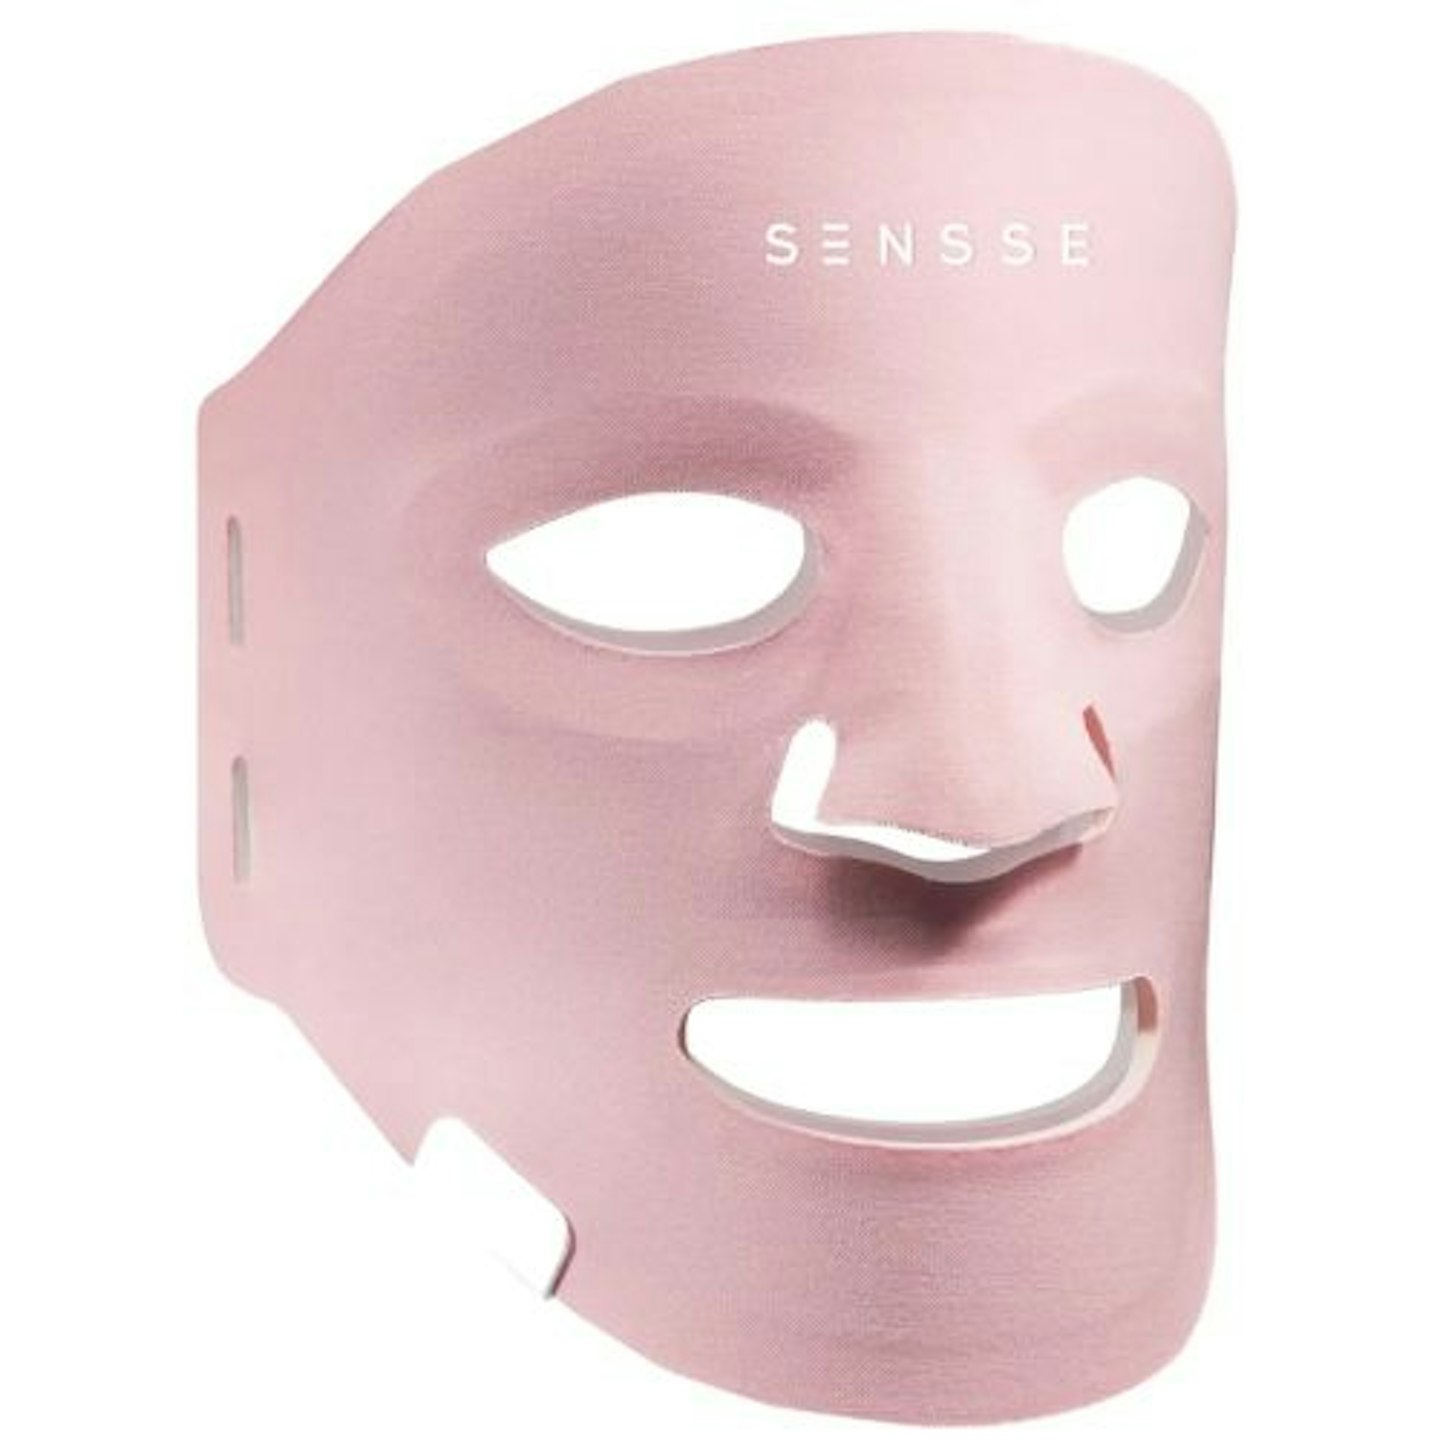 Sensse Professional LED Face Mask